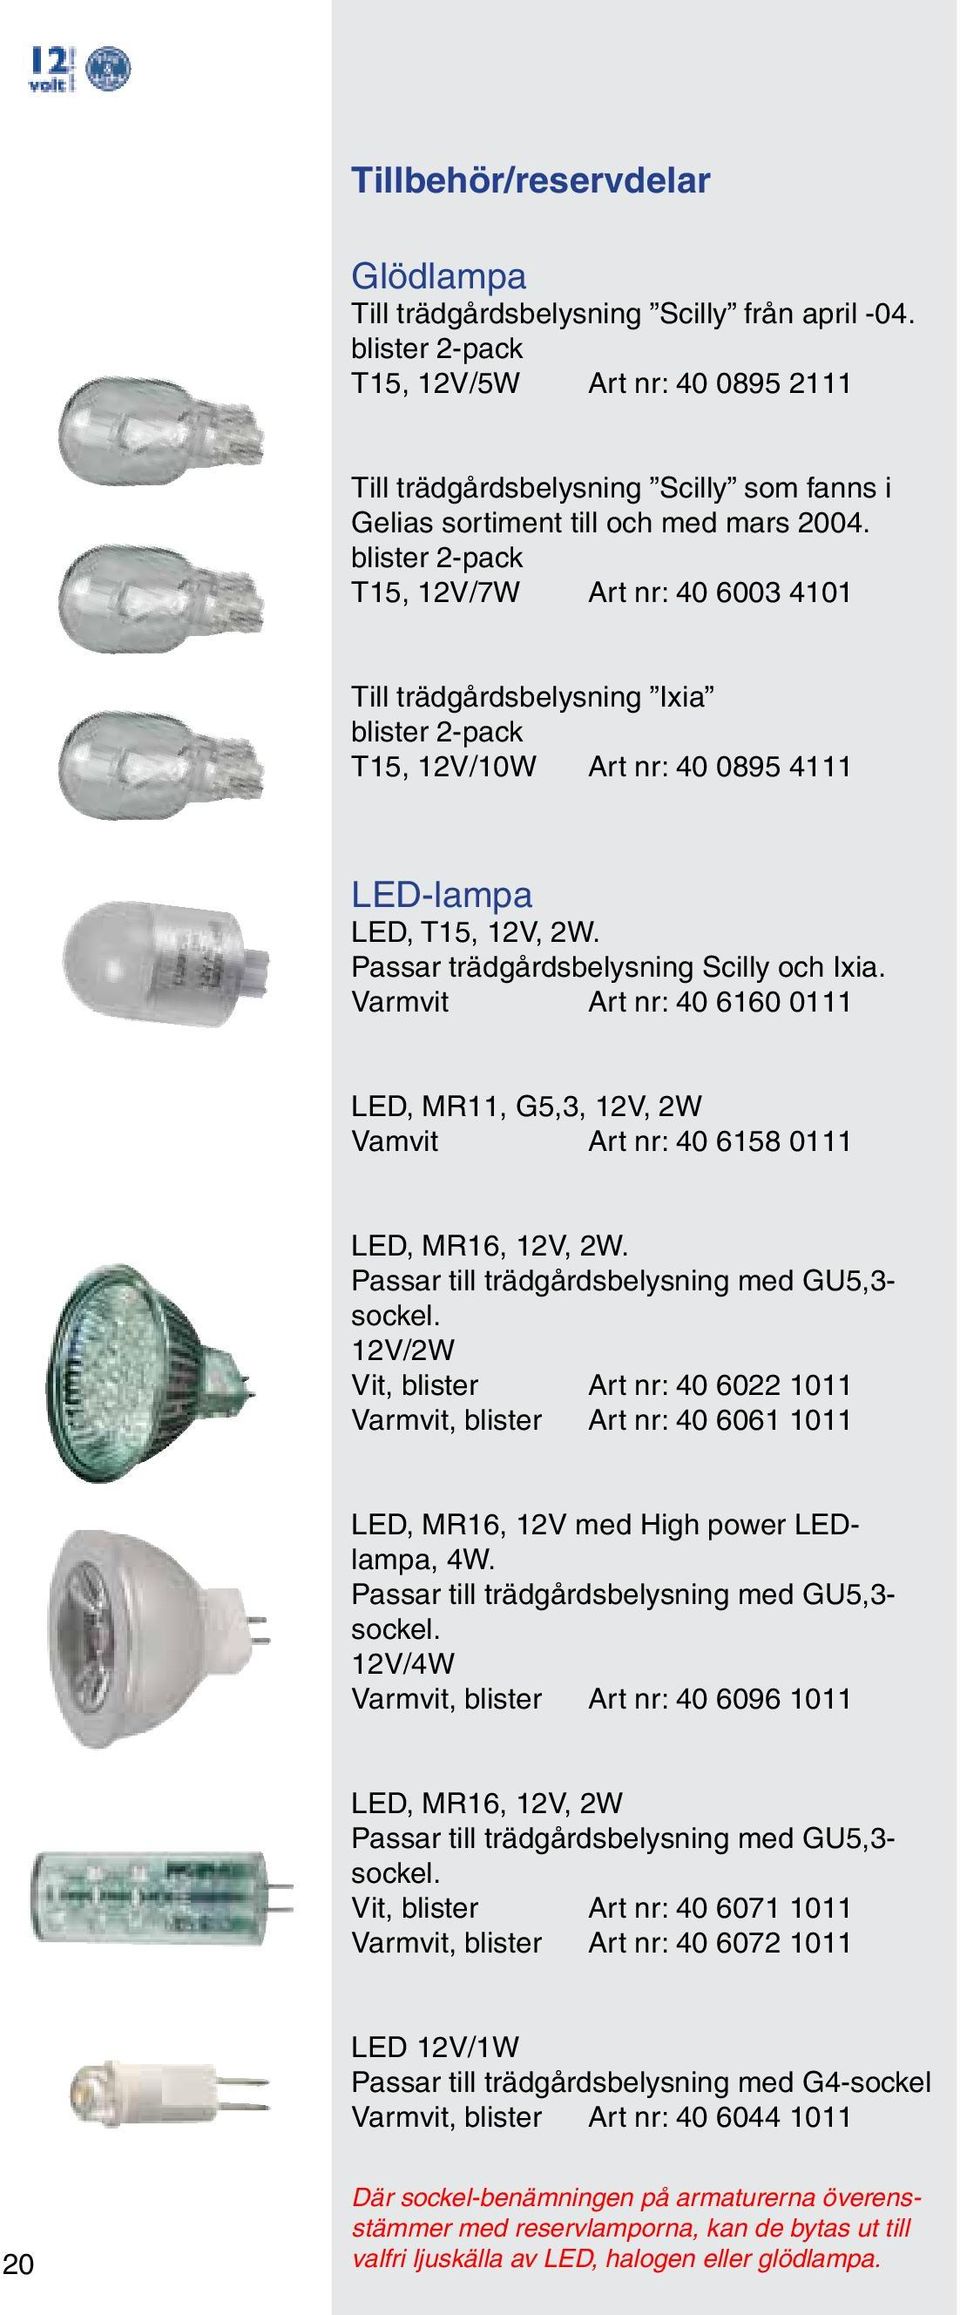 blister 2-pack T15, 12V/7W Art nr: 40 6003 4101 Till trädgårdsbelysning Ixia blister 2-pack T15, 12V/10W Art nr: 40 0895 4111 LED-lampa LED, T15, 12V, 2W. Passar trädgårdsbelysning Scilly och Ixia.